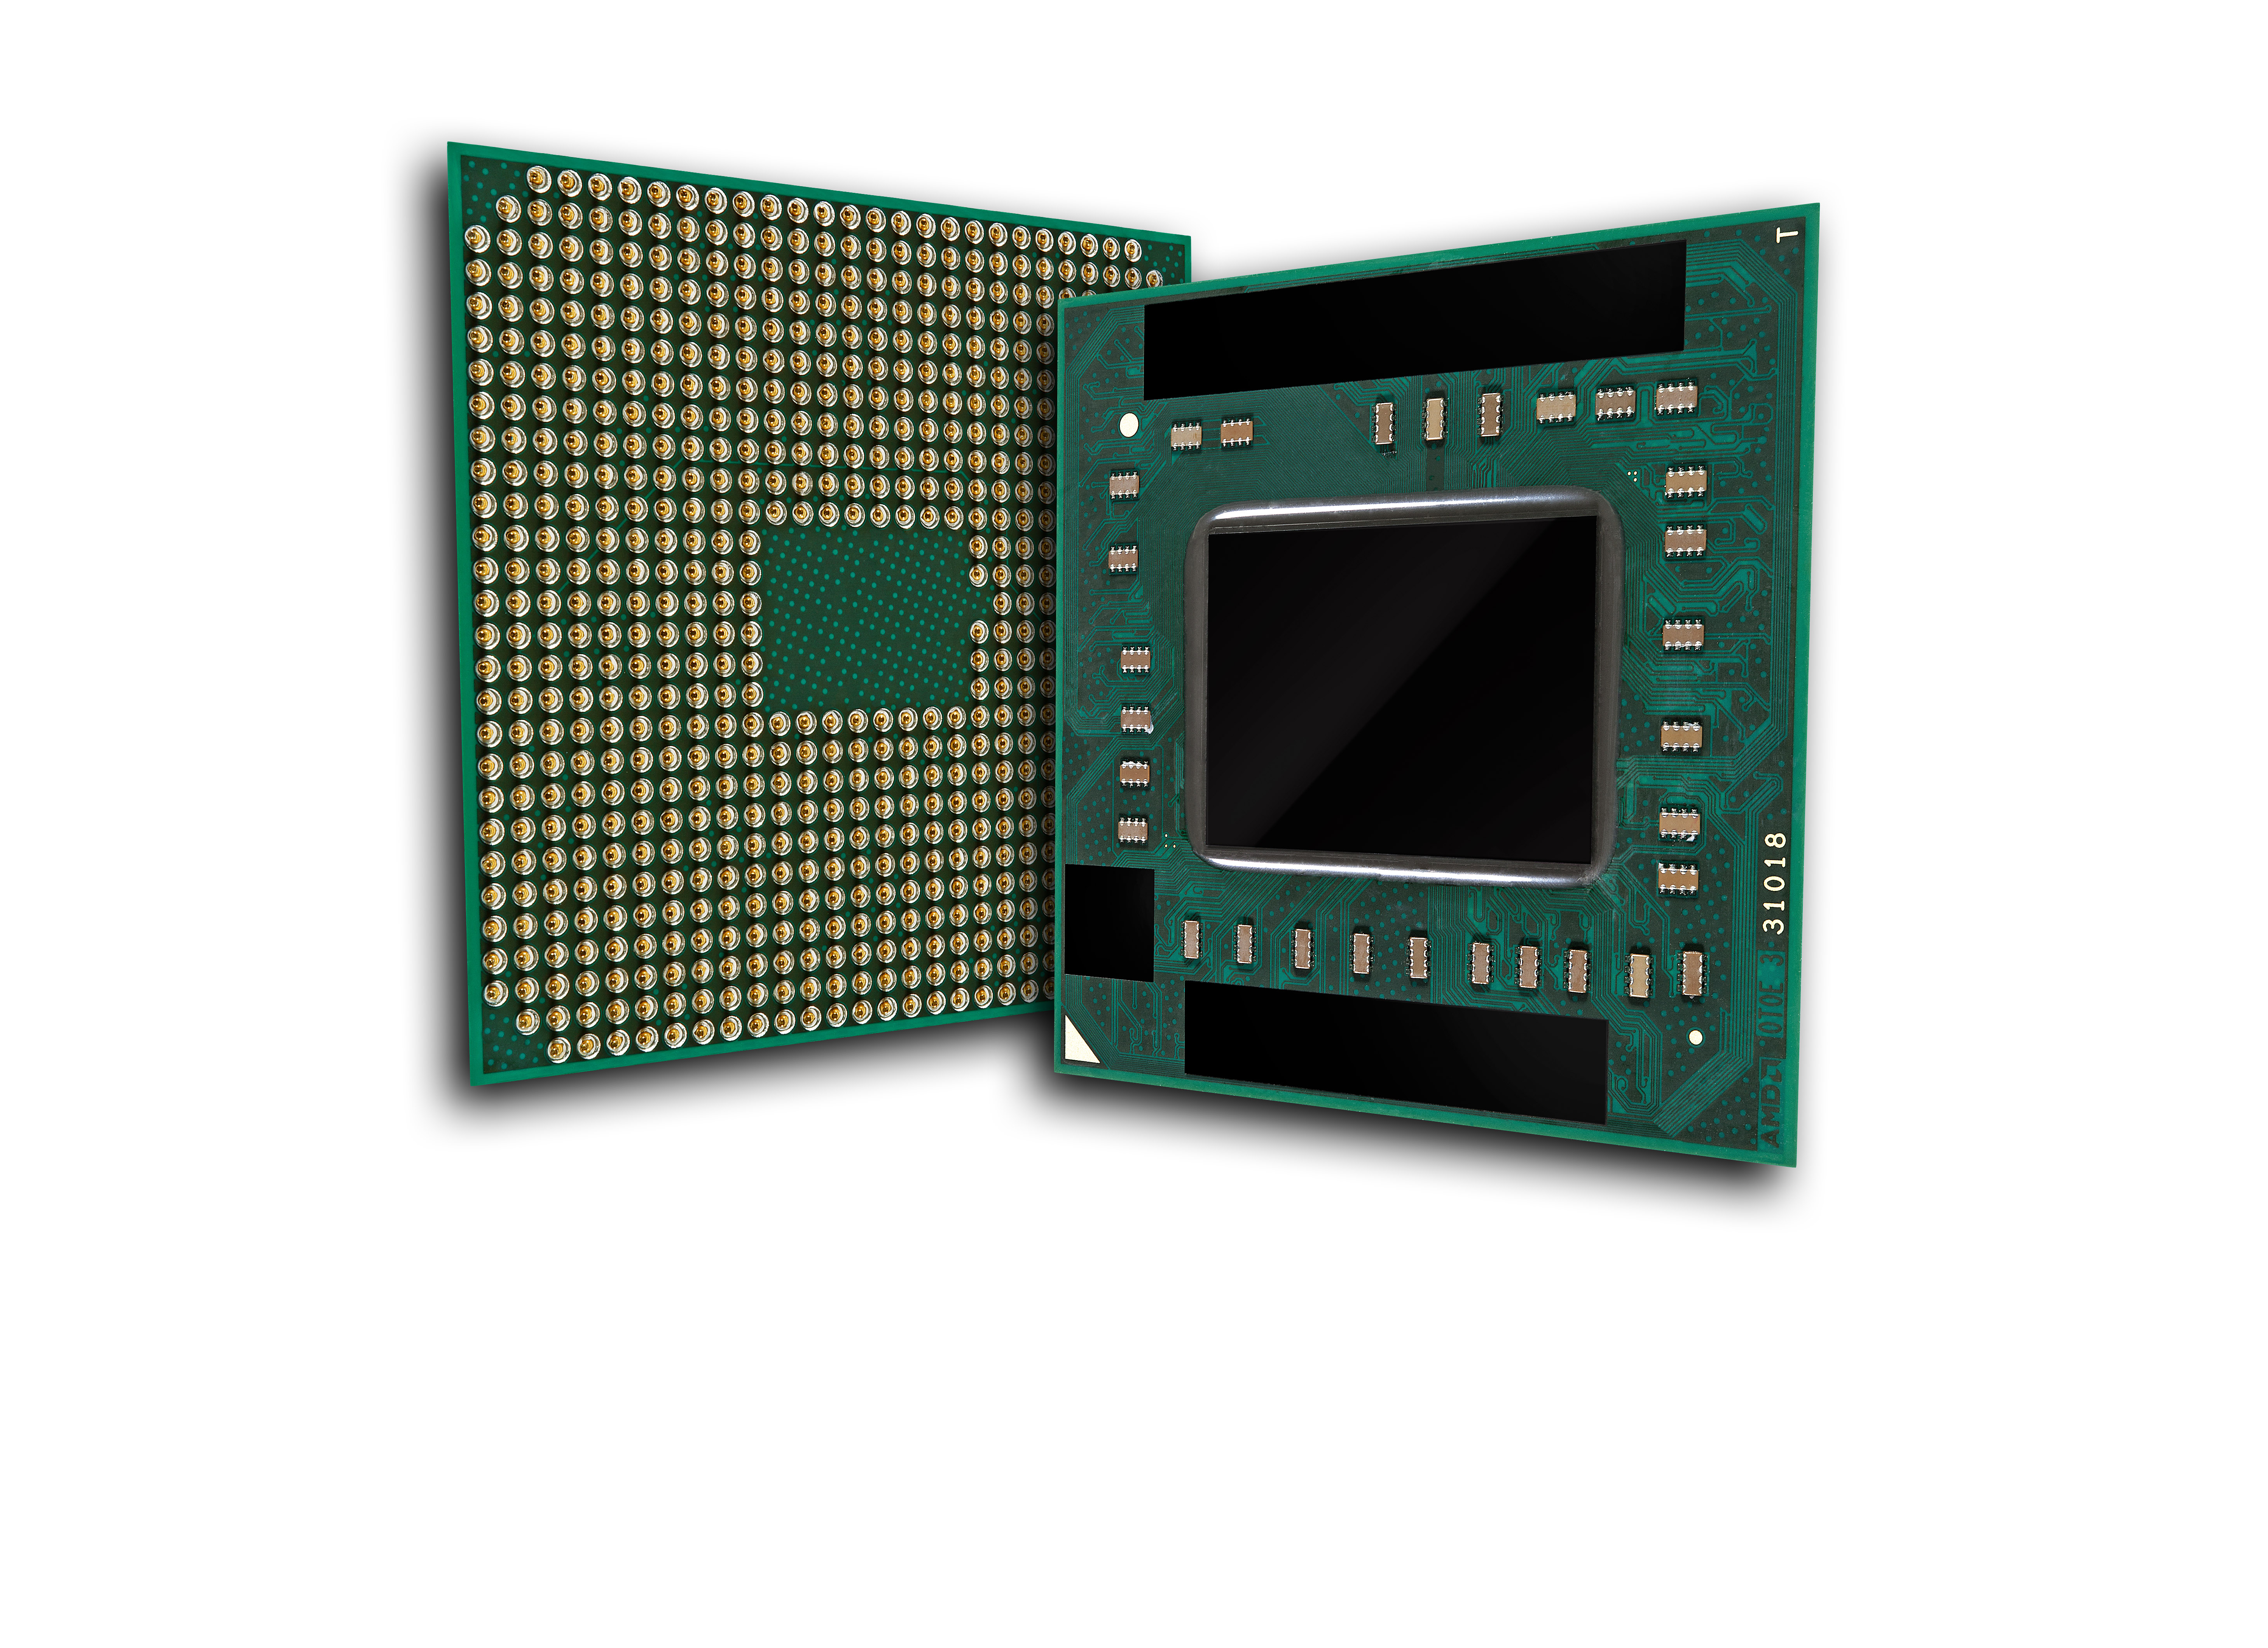 Immagine pubblicata in relazione al seguente contenuto: AMD annuncia le APU A-Series di seconda generazione (Trinity) | Nome immagine: news17223_1.jpg